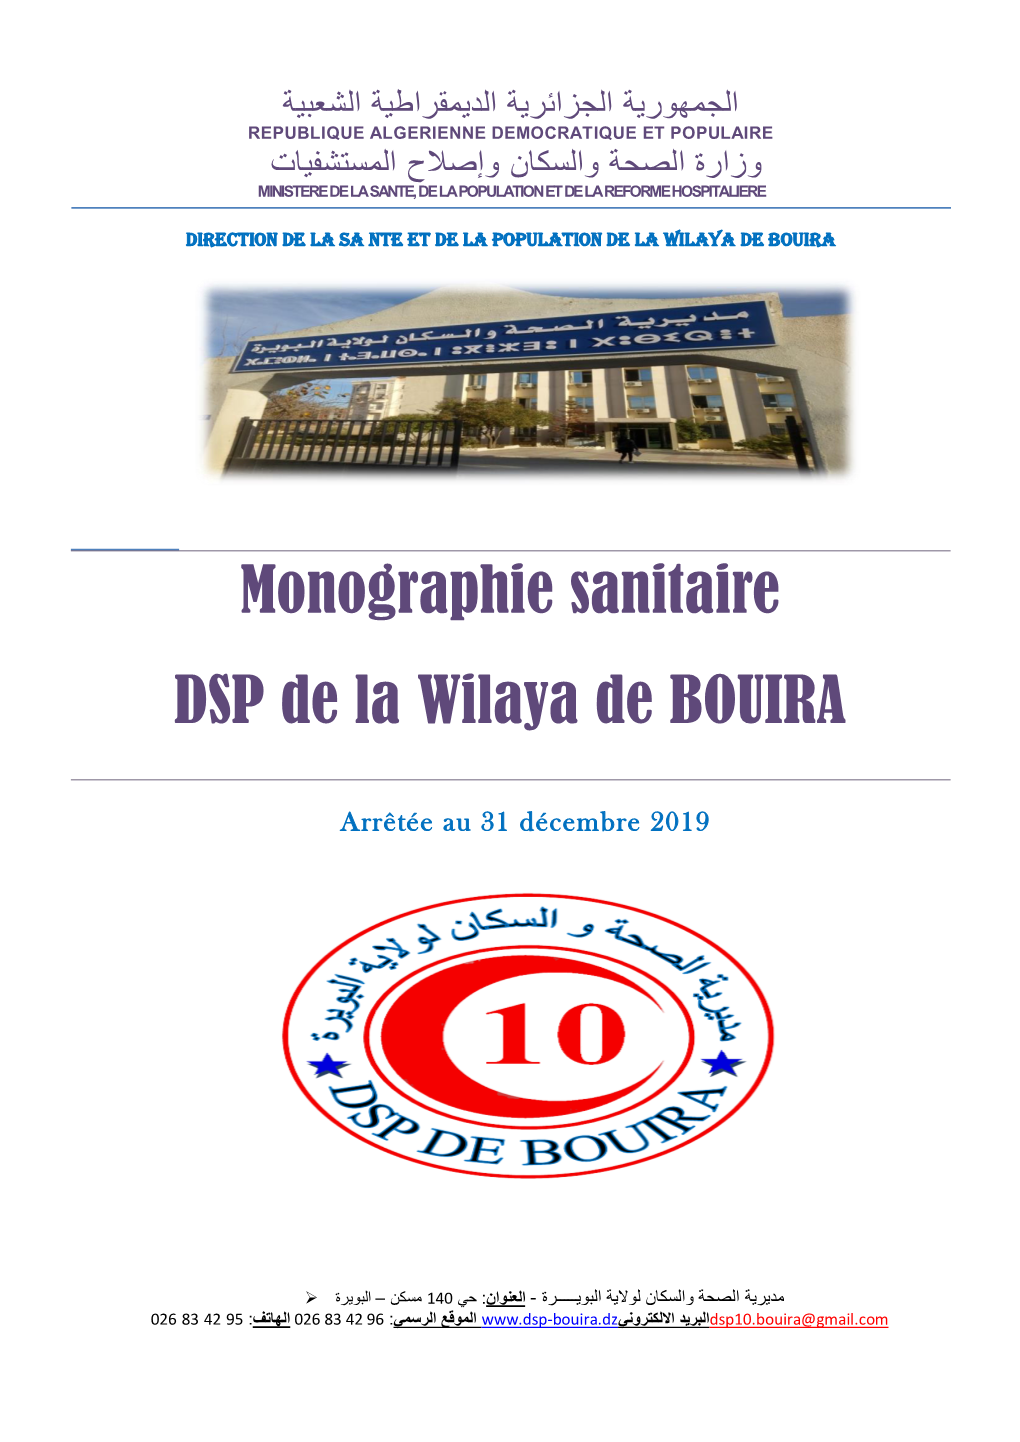 Monographie Sanitaire DSP De La Wilaya De BOUIRA